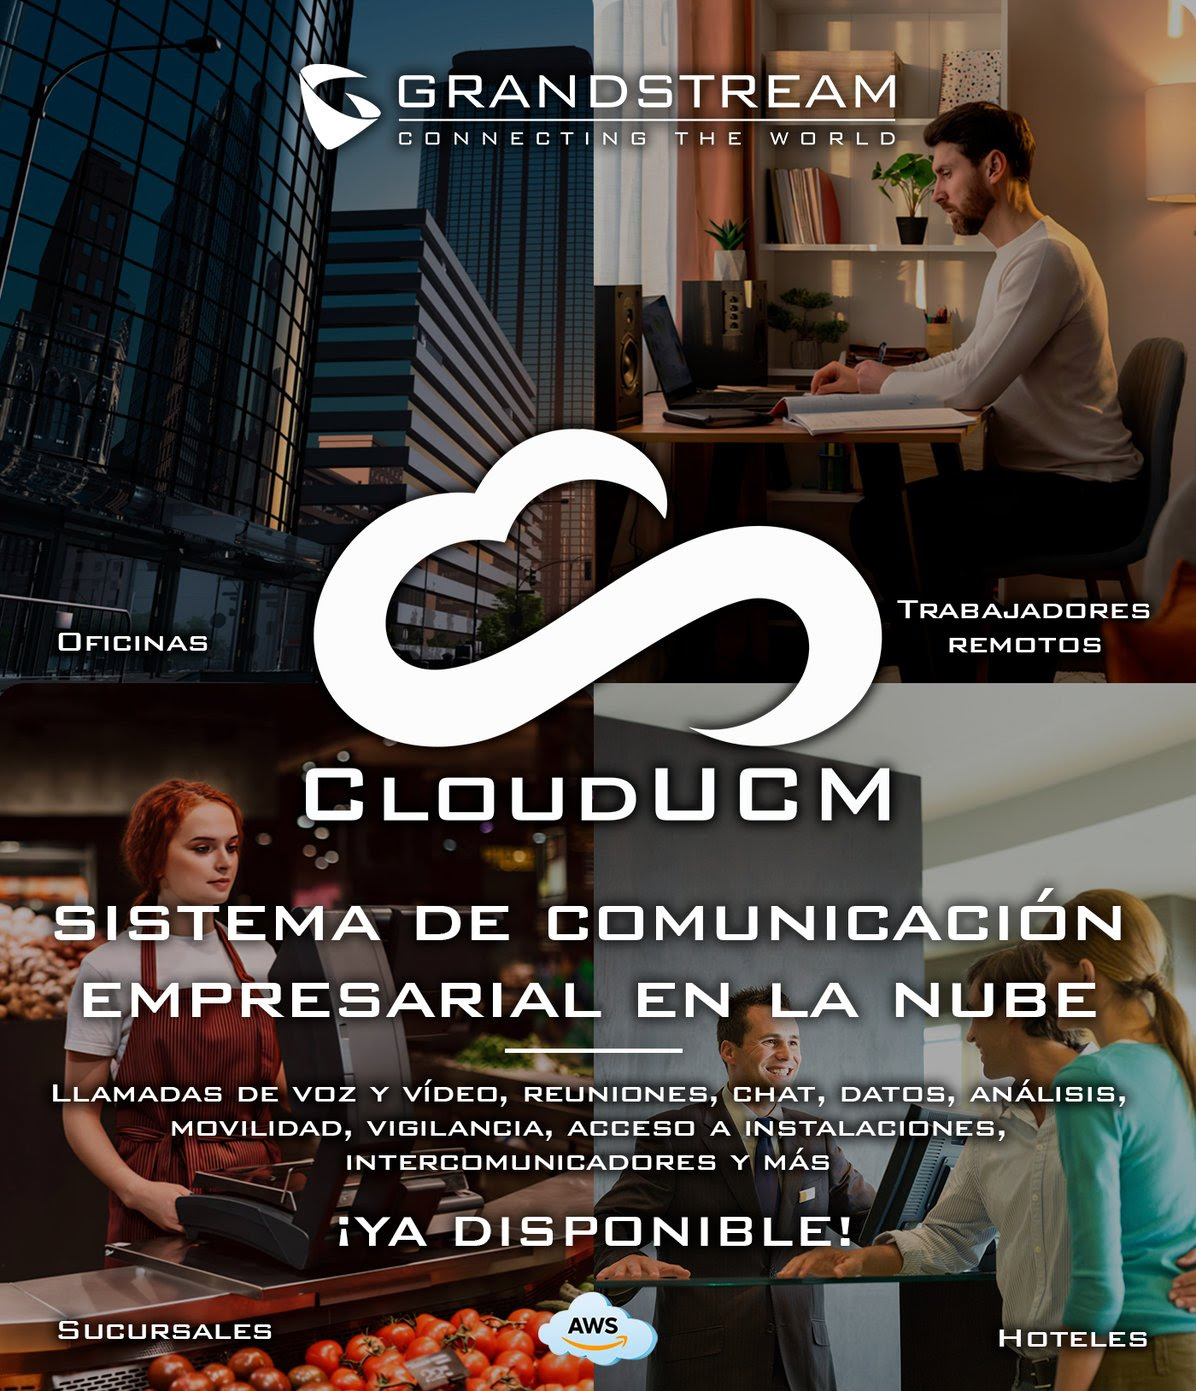 Grandstream CloudUCM UCM en la Nube Ecosistema de Comunicaciones Conmutador PBX en la Nube hibrida IP, SIP y Analogico Oficinas, Trabajadores Remotos, Sucursales, Hoteles - CASTelecom